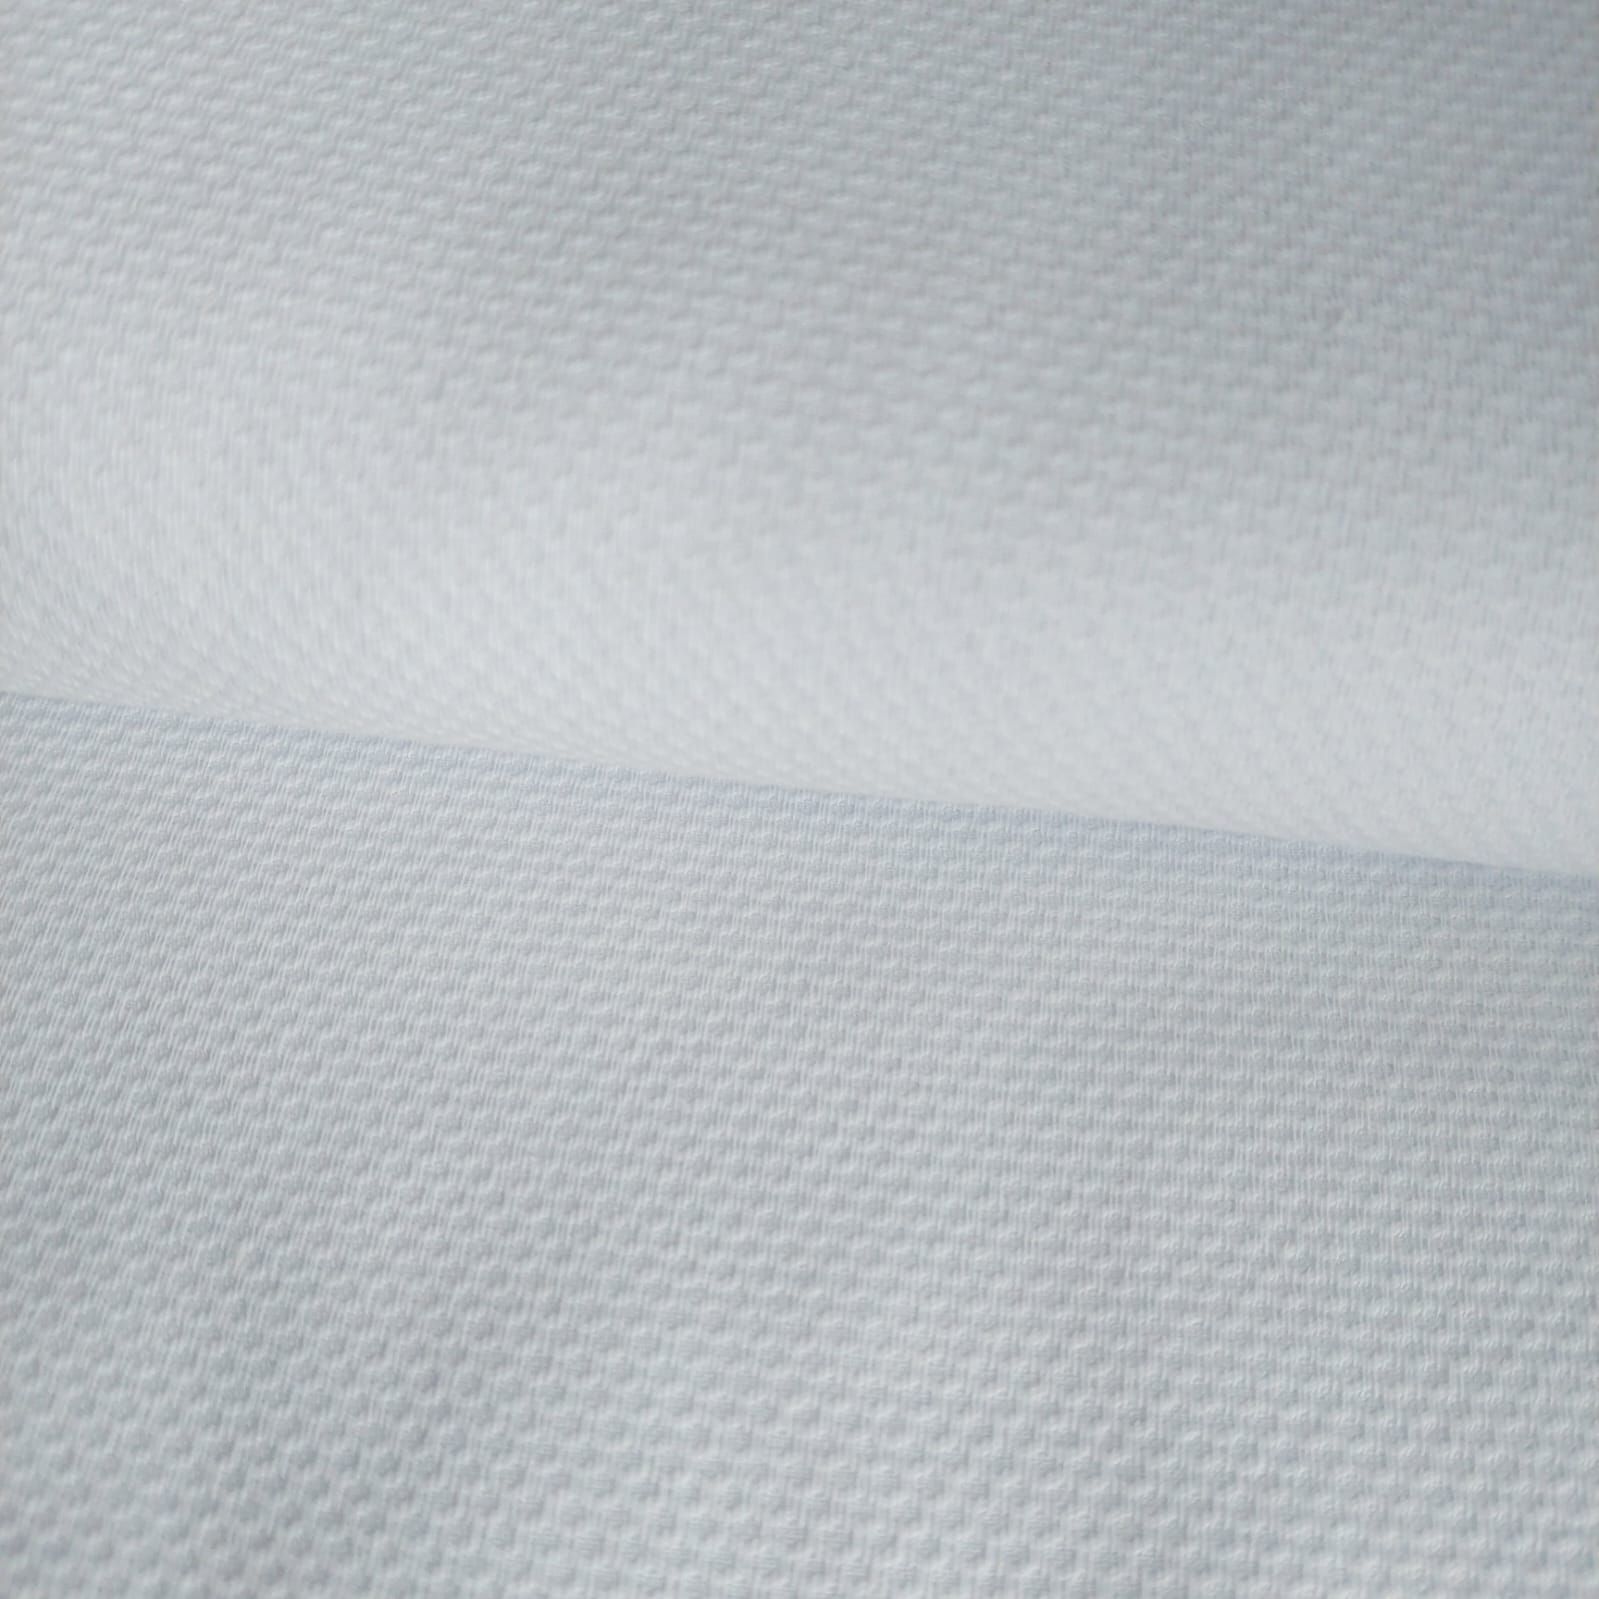 Tecido piquet favinho branco - Fernando Maluhy  (50x1,50cm)                